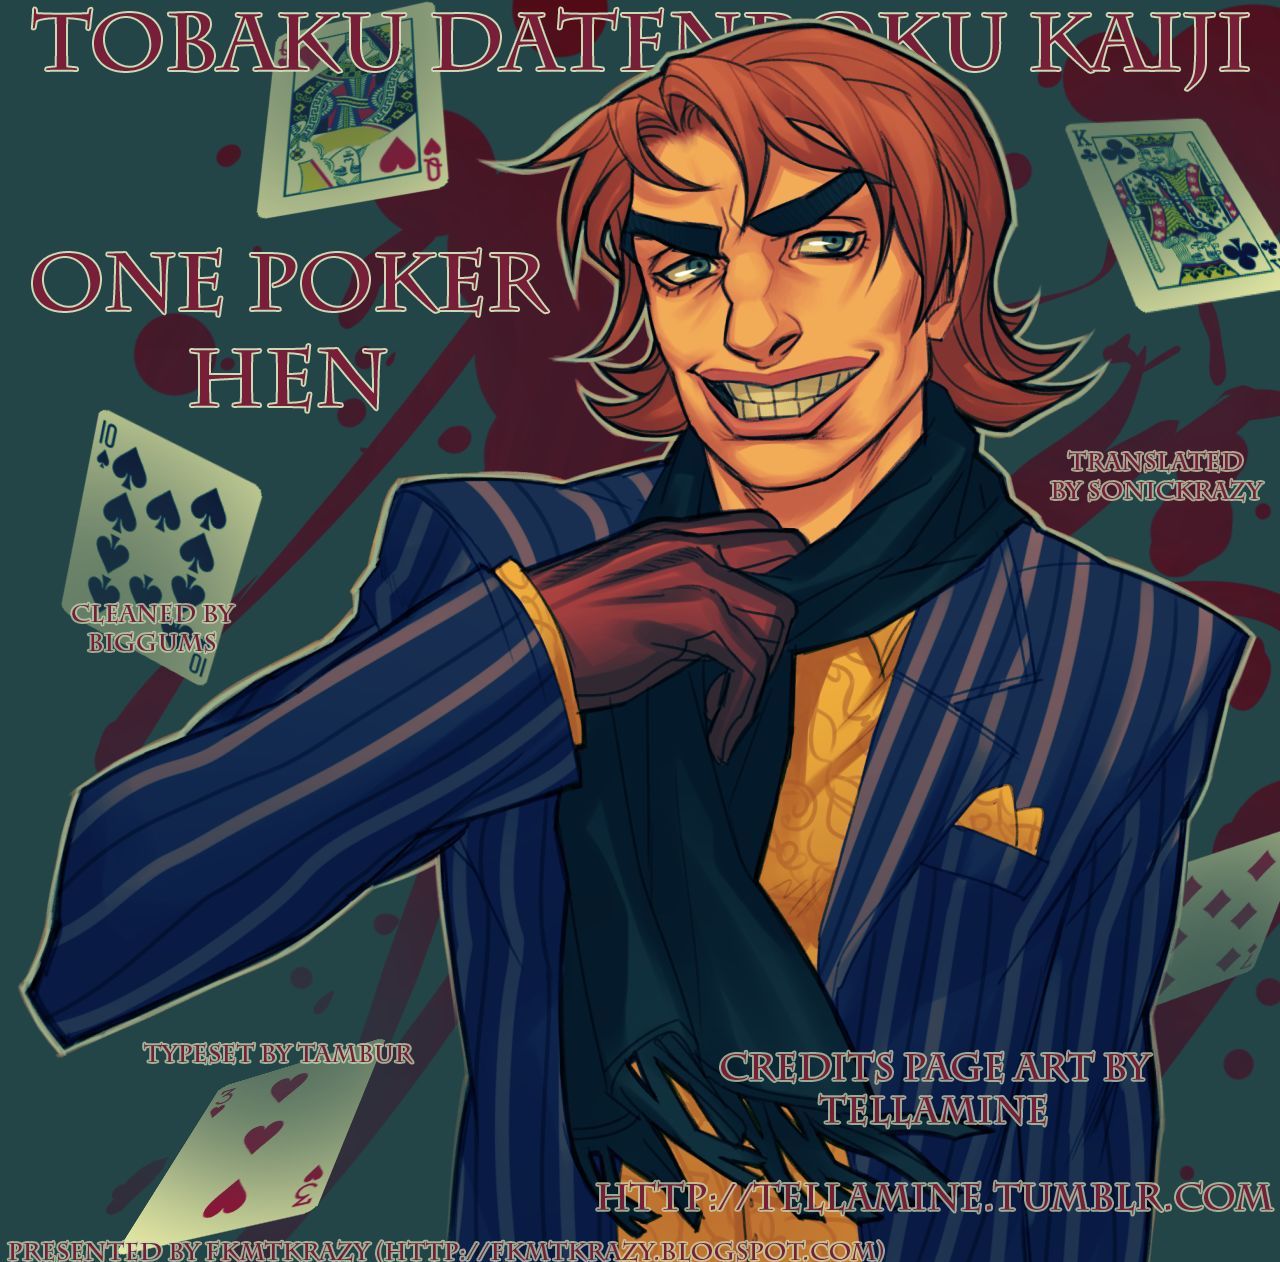 Tobaku Datenroku Kaiji - One Poker Hen 226